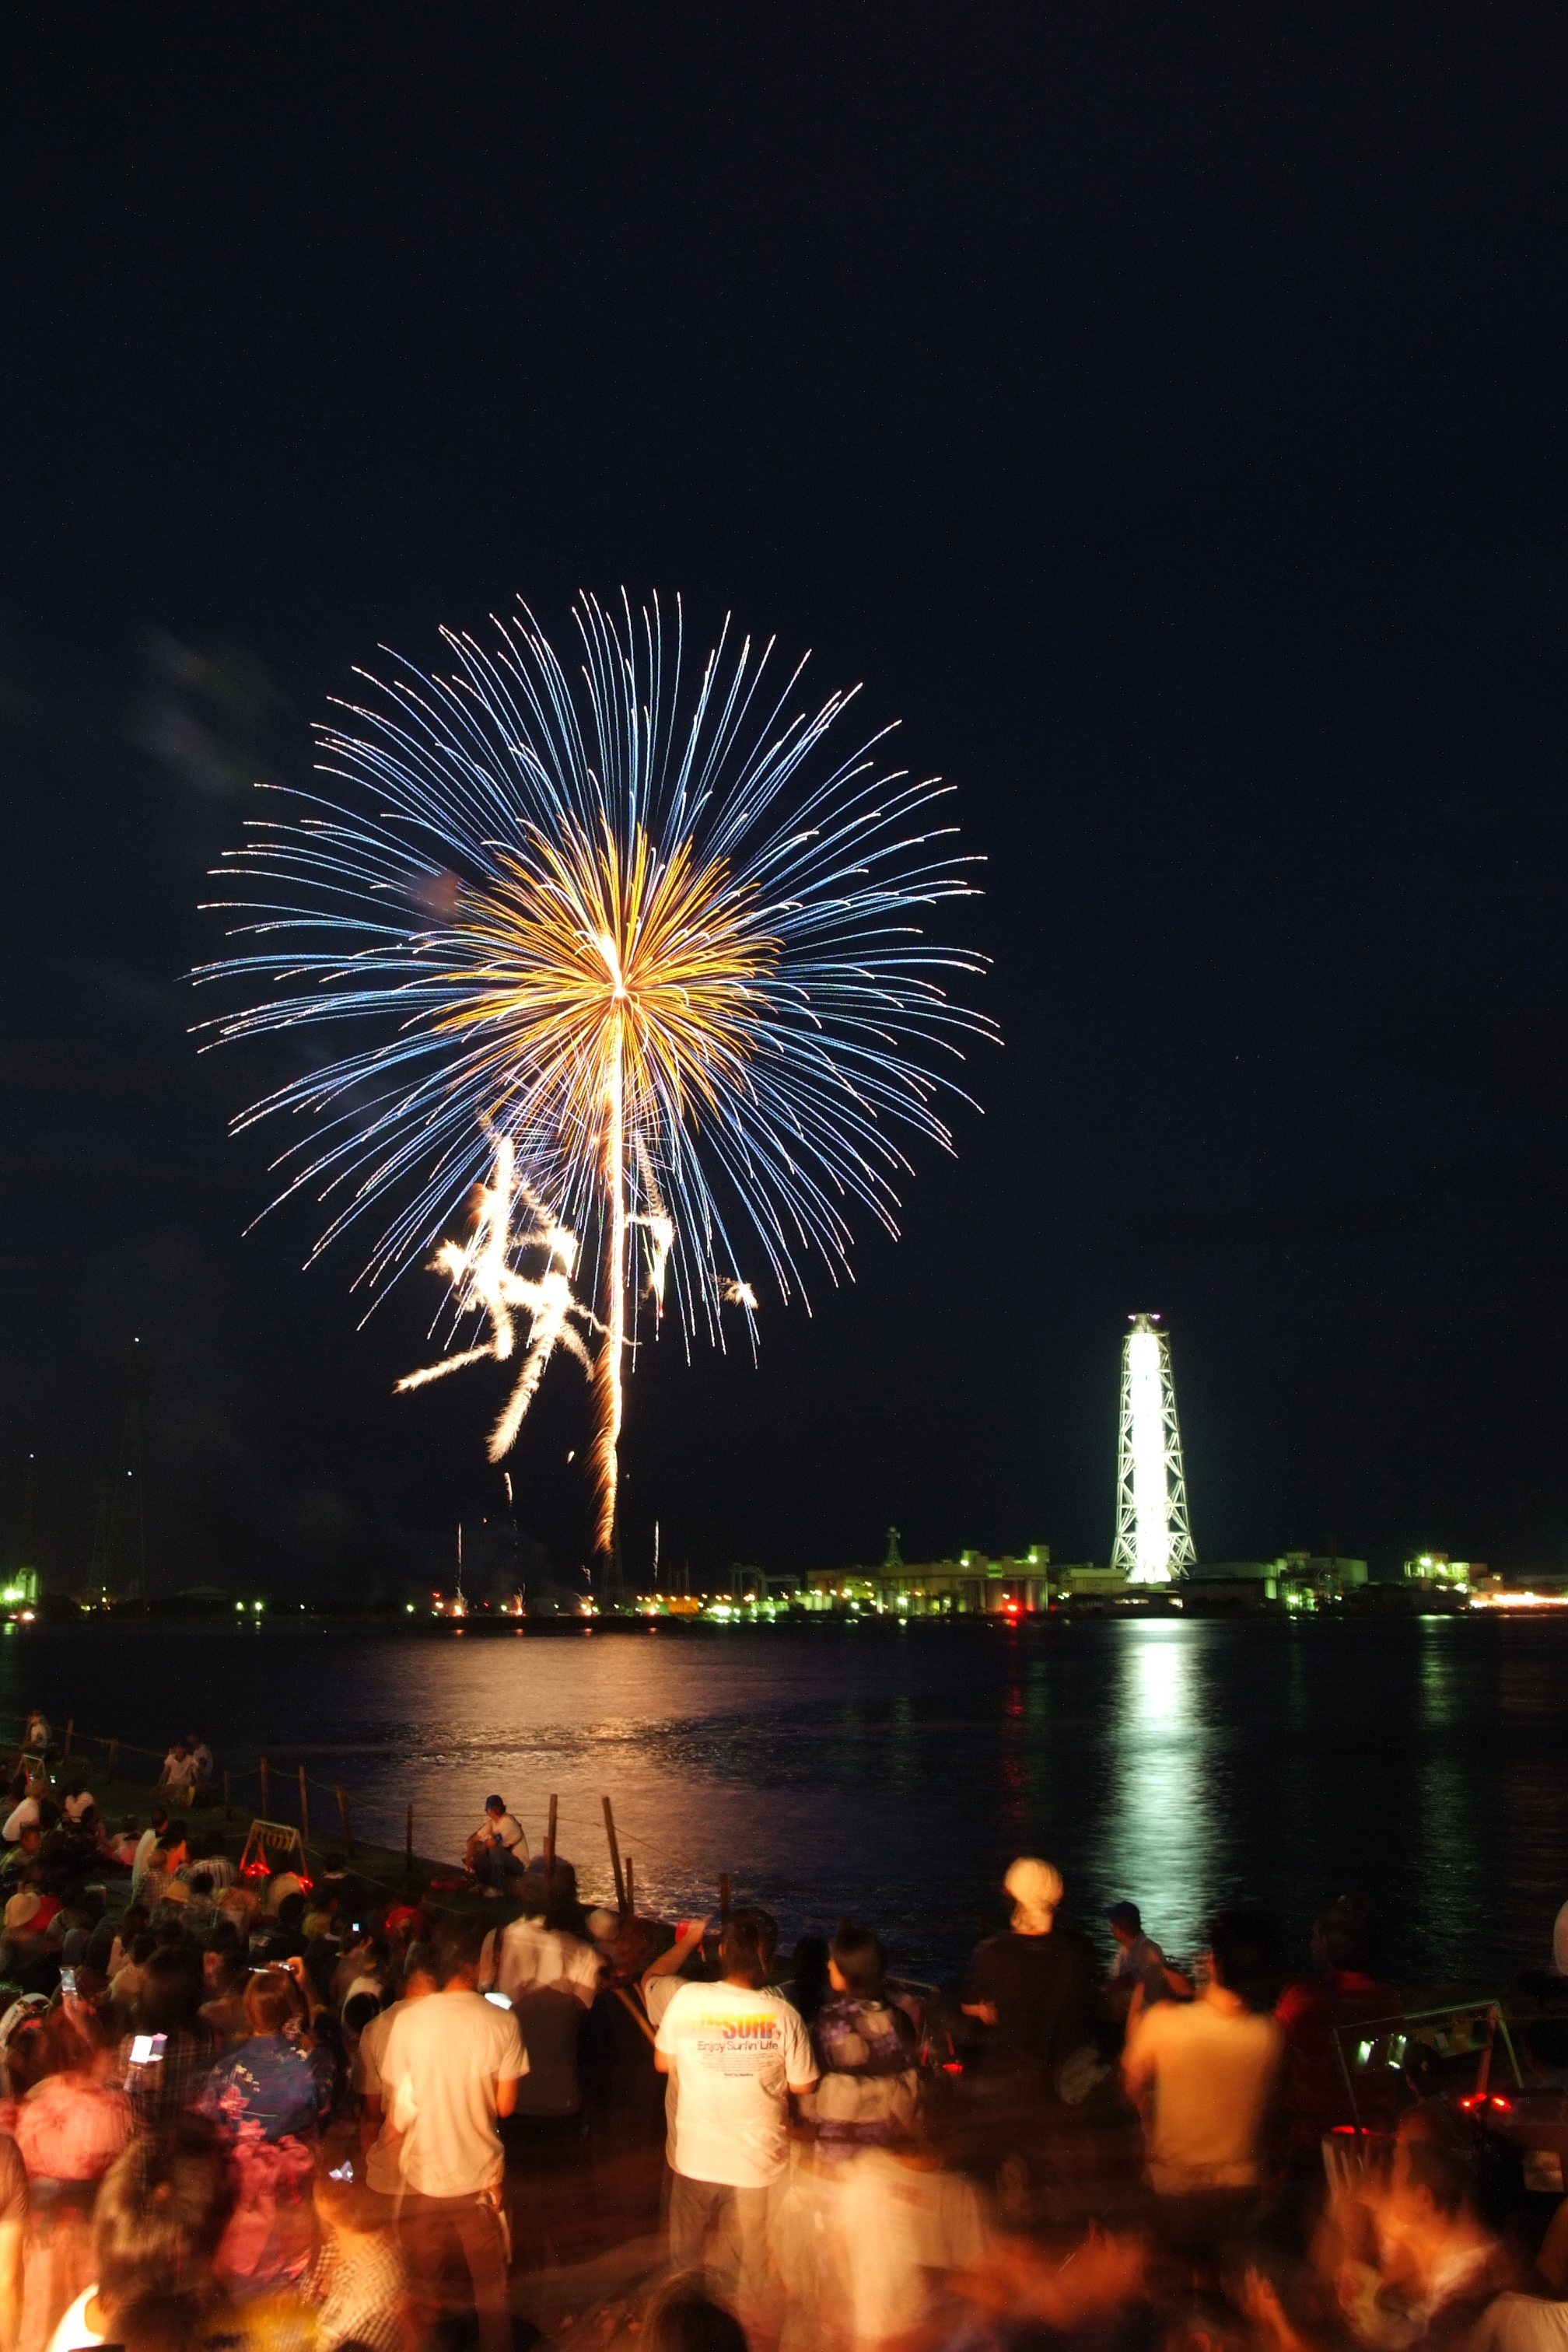 姫路みなと祭での花火の写真 姫路市